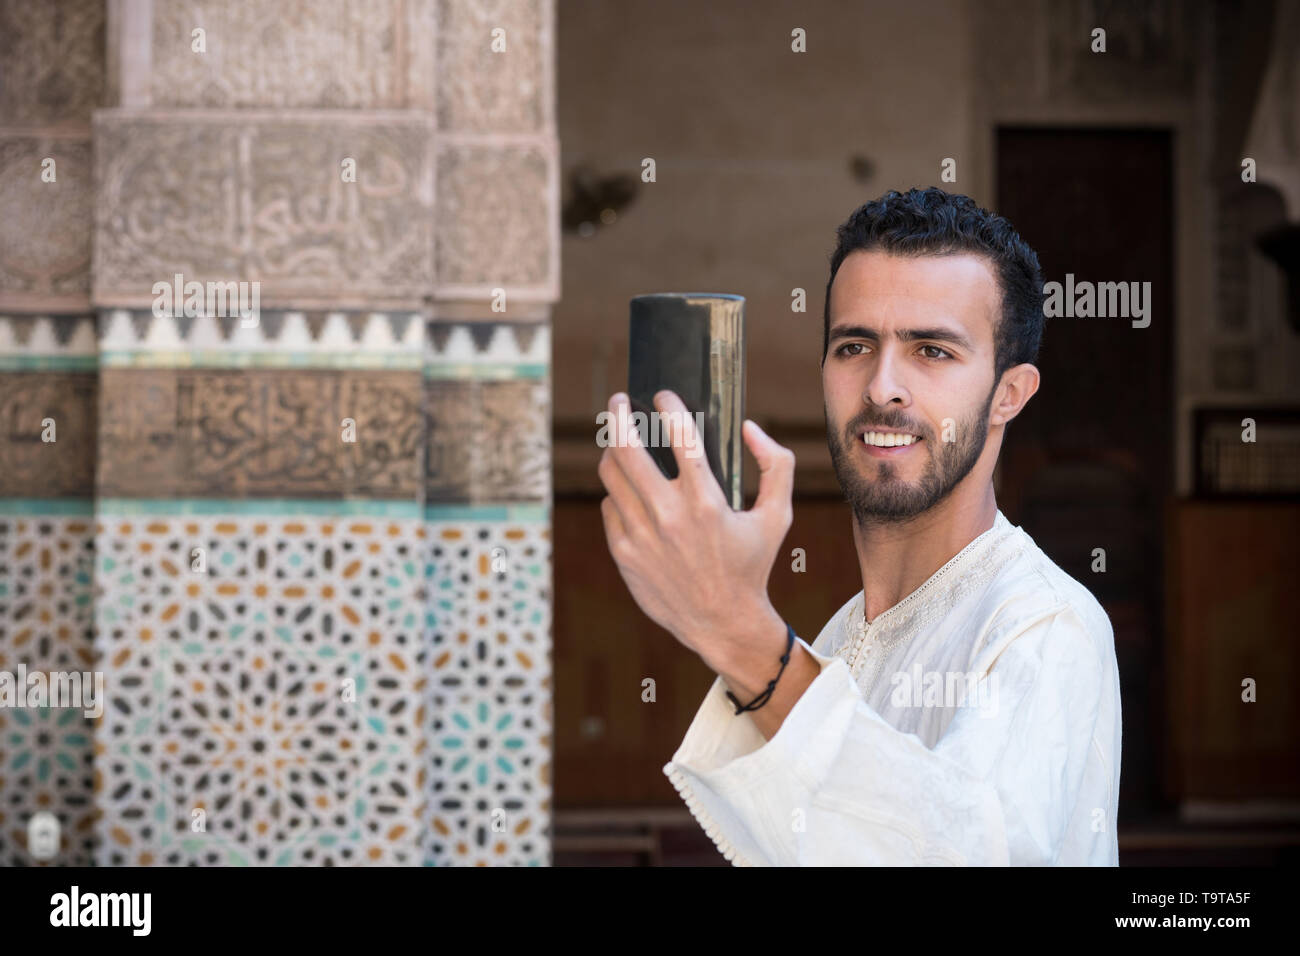 Junge muslimische Mann in traditioneller Kleidung lächelnd und unter selfie mit Handy Stockfoto